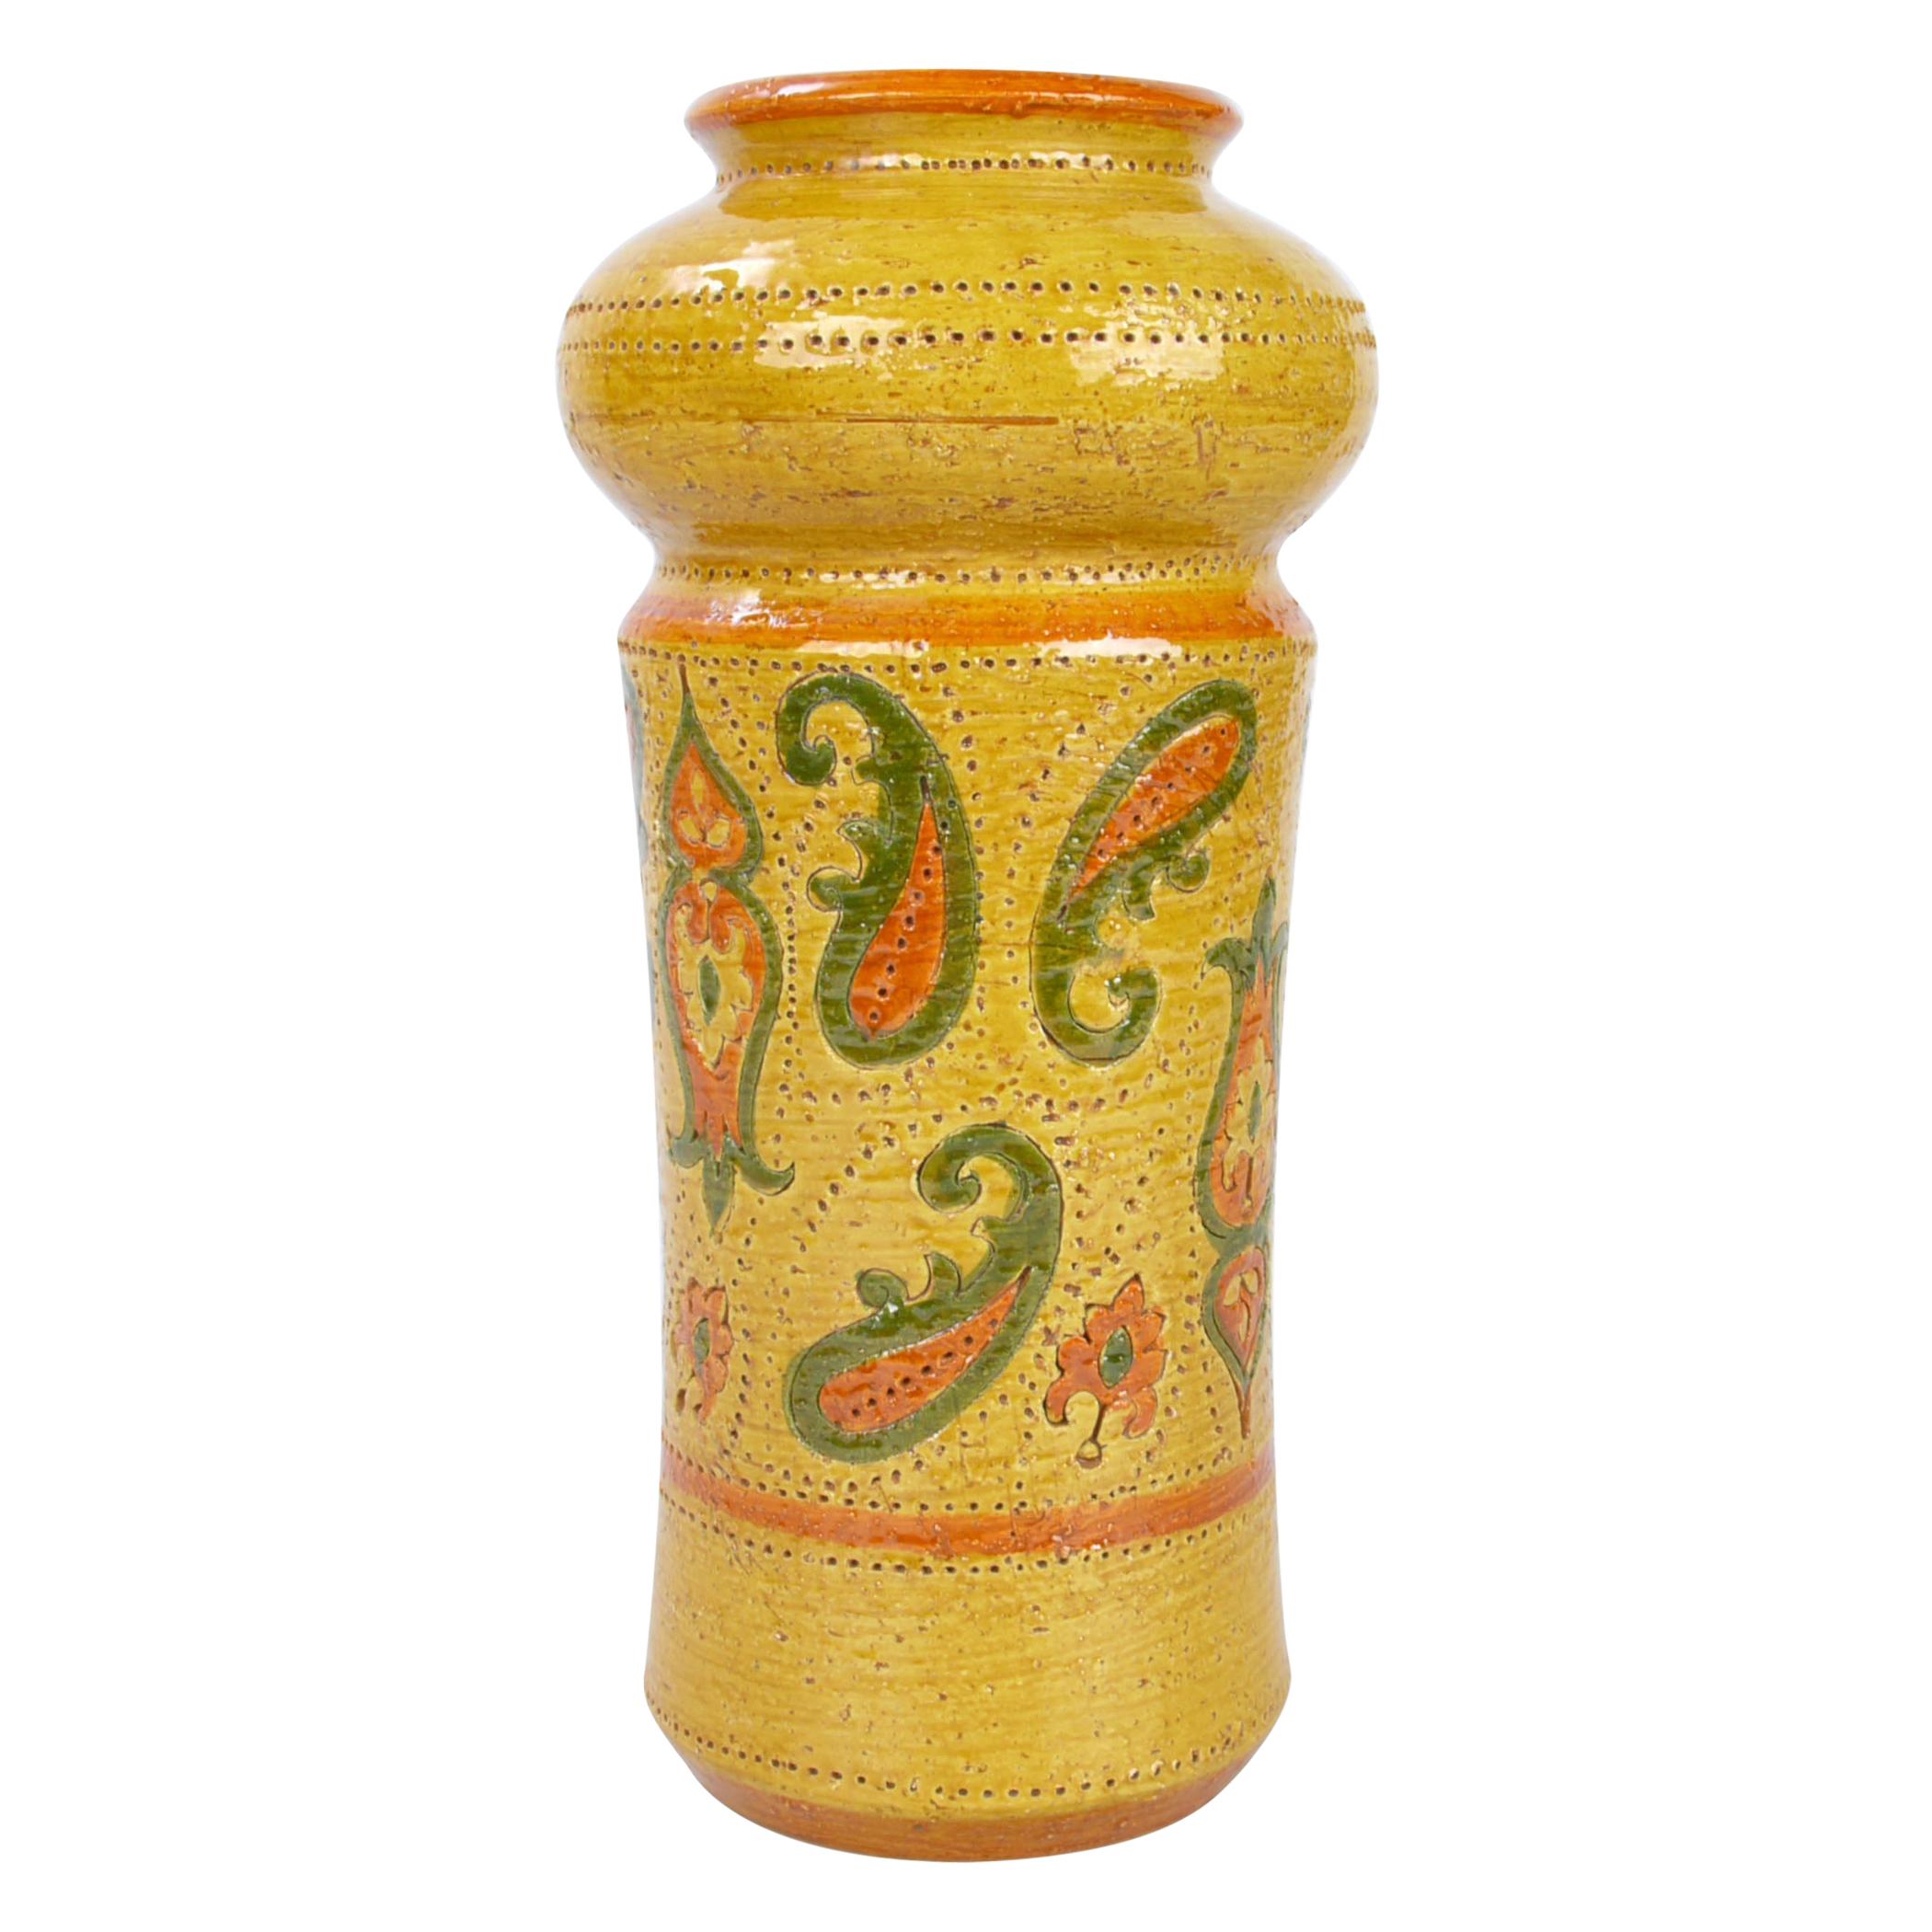 Rosenthal-Netter Mid-Century Modern Glazed Ceramic Vase Italy